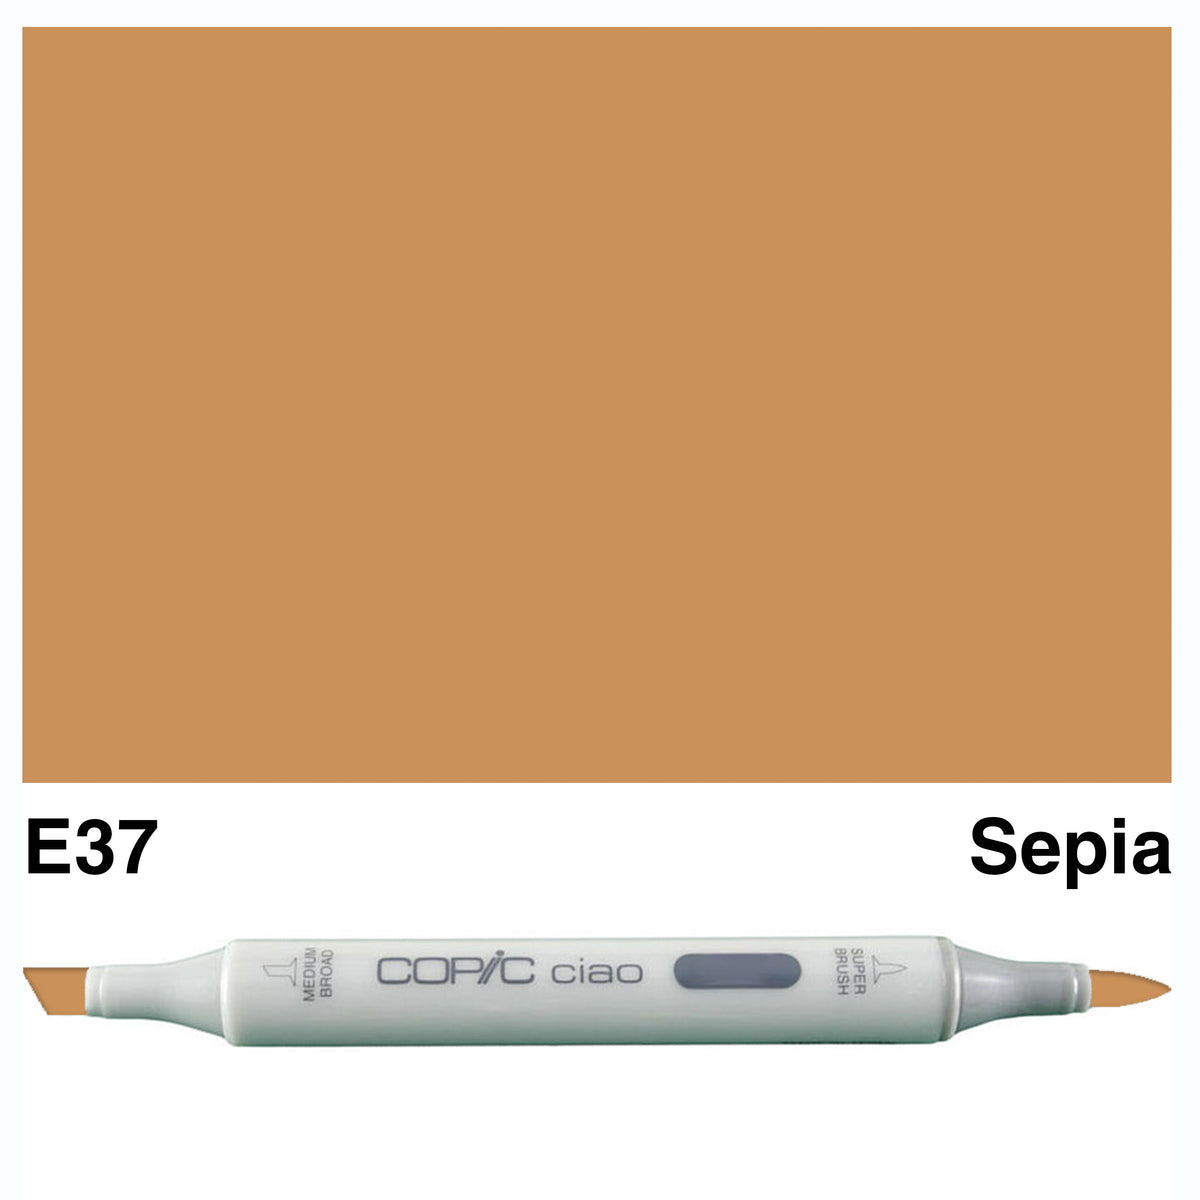 Copic Ciao E37-Sepia